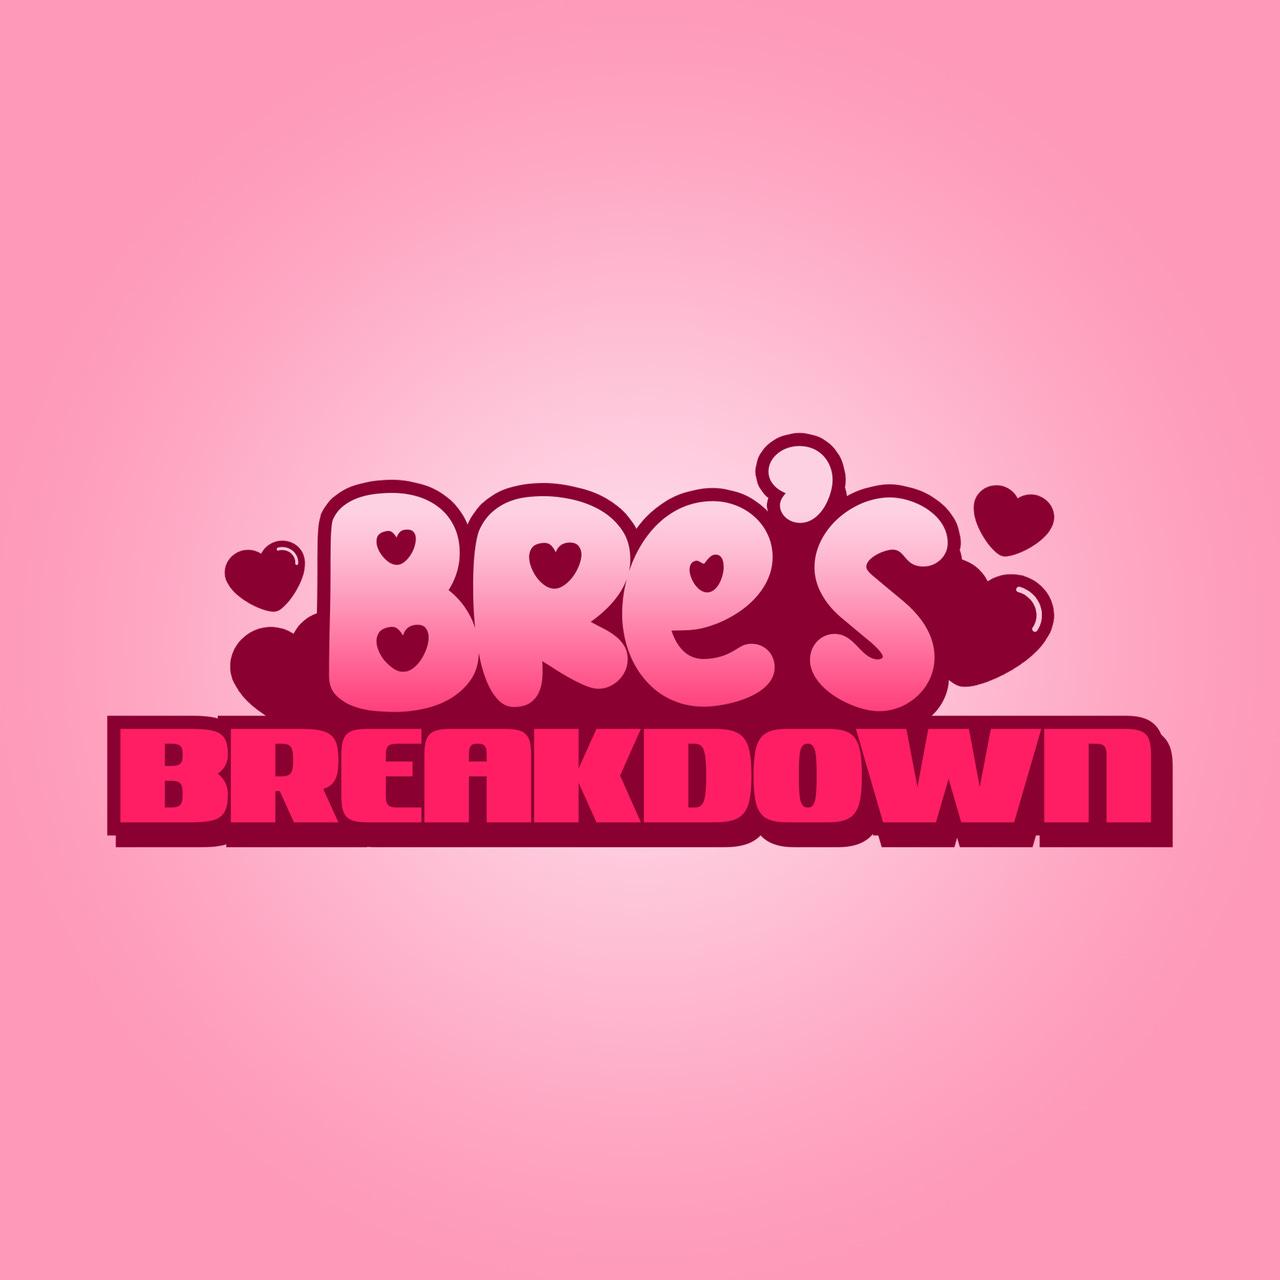 bre's breakdown